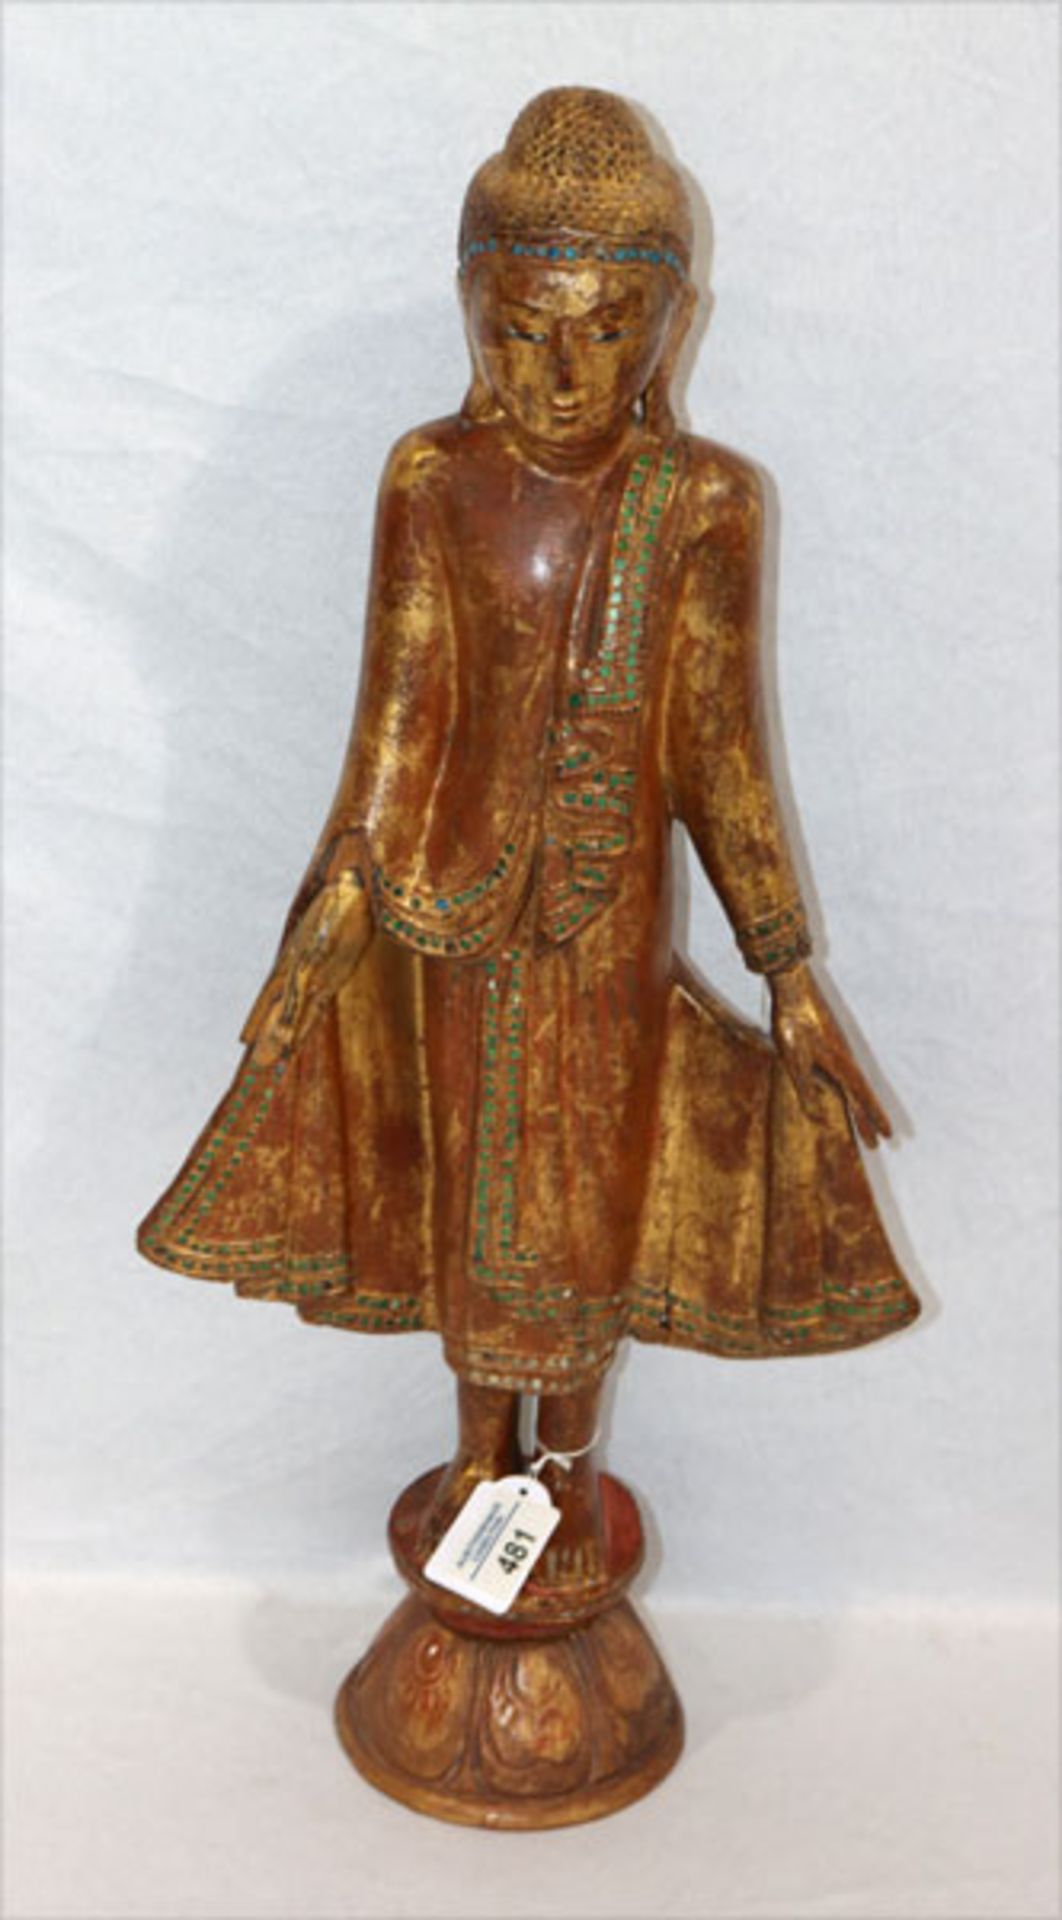 Holz Figurenskulptur 'Stehender Buddha', Thailand, rot/gold gefaßt mit Spiegelstein-Verzierungen,